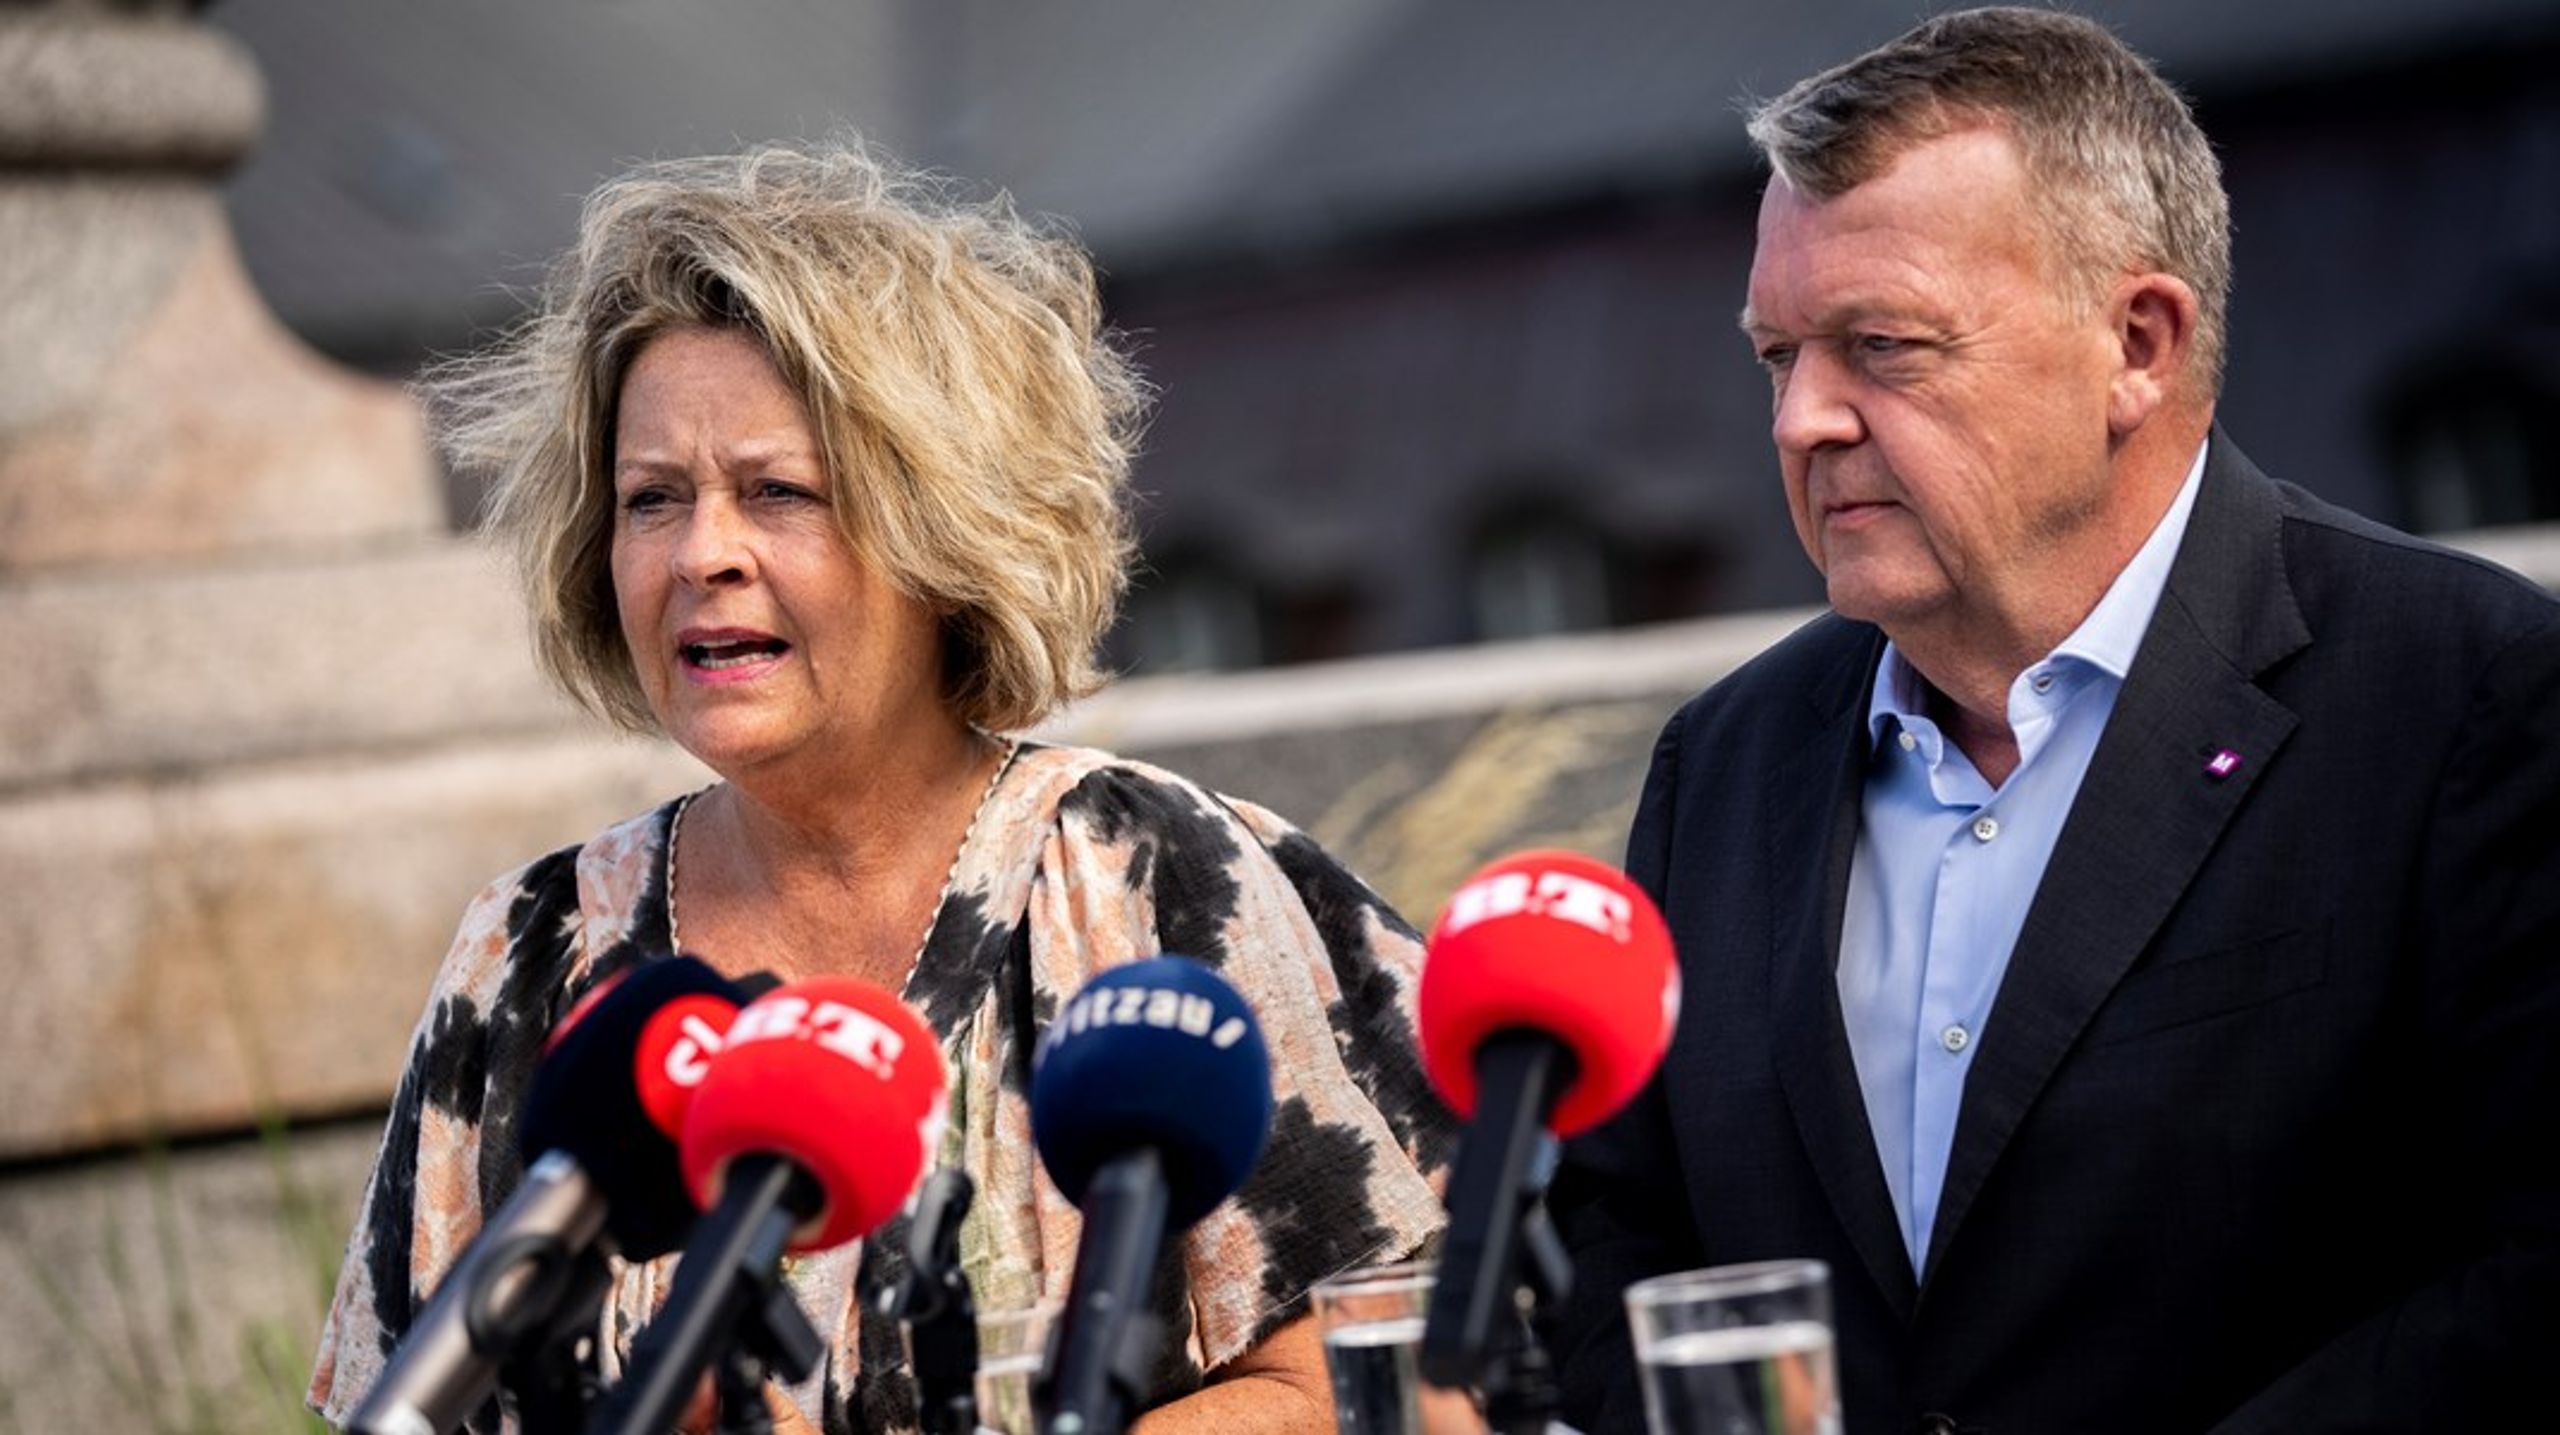 Stine Bosse blev præsenteret som Moderaternes spidskandidat til EU-valget i september sidste år. Det skete på et pressemøde, hvor partiformand og udenrigsminister Lars Løkke Rasmussen også deltog.